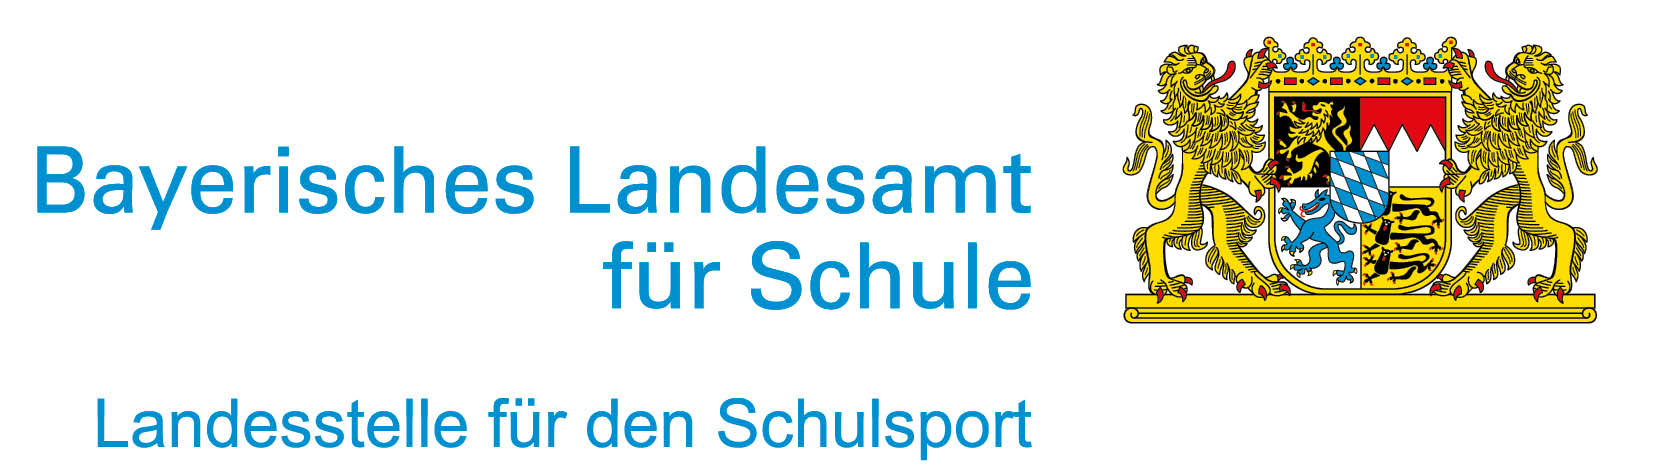 Bayerisches Landesamt für Schule Landesstelle für den Schulsport